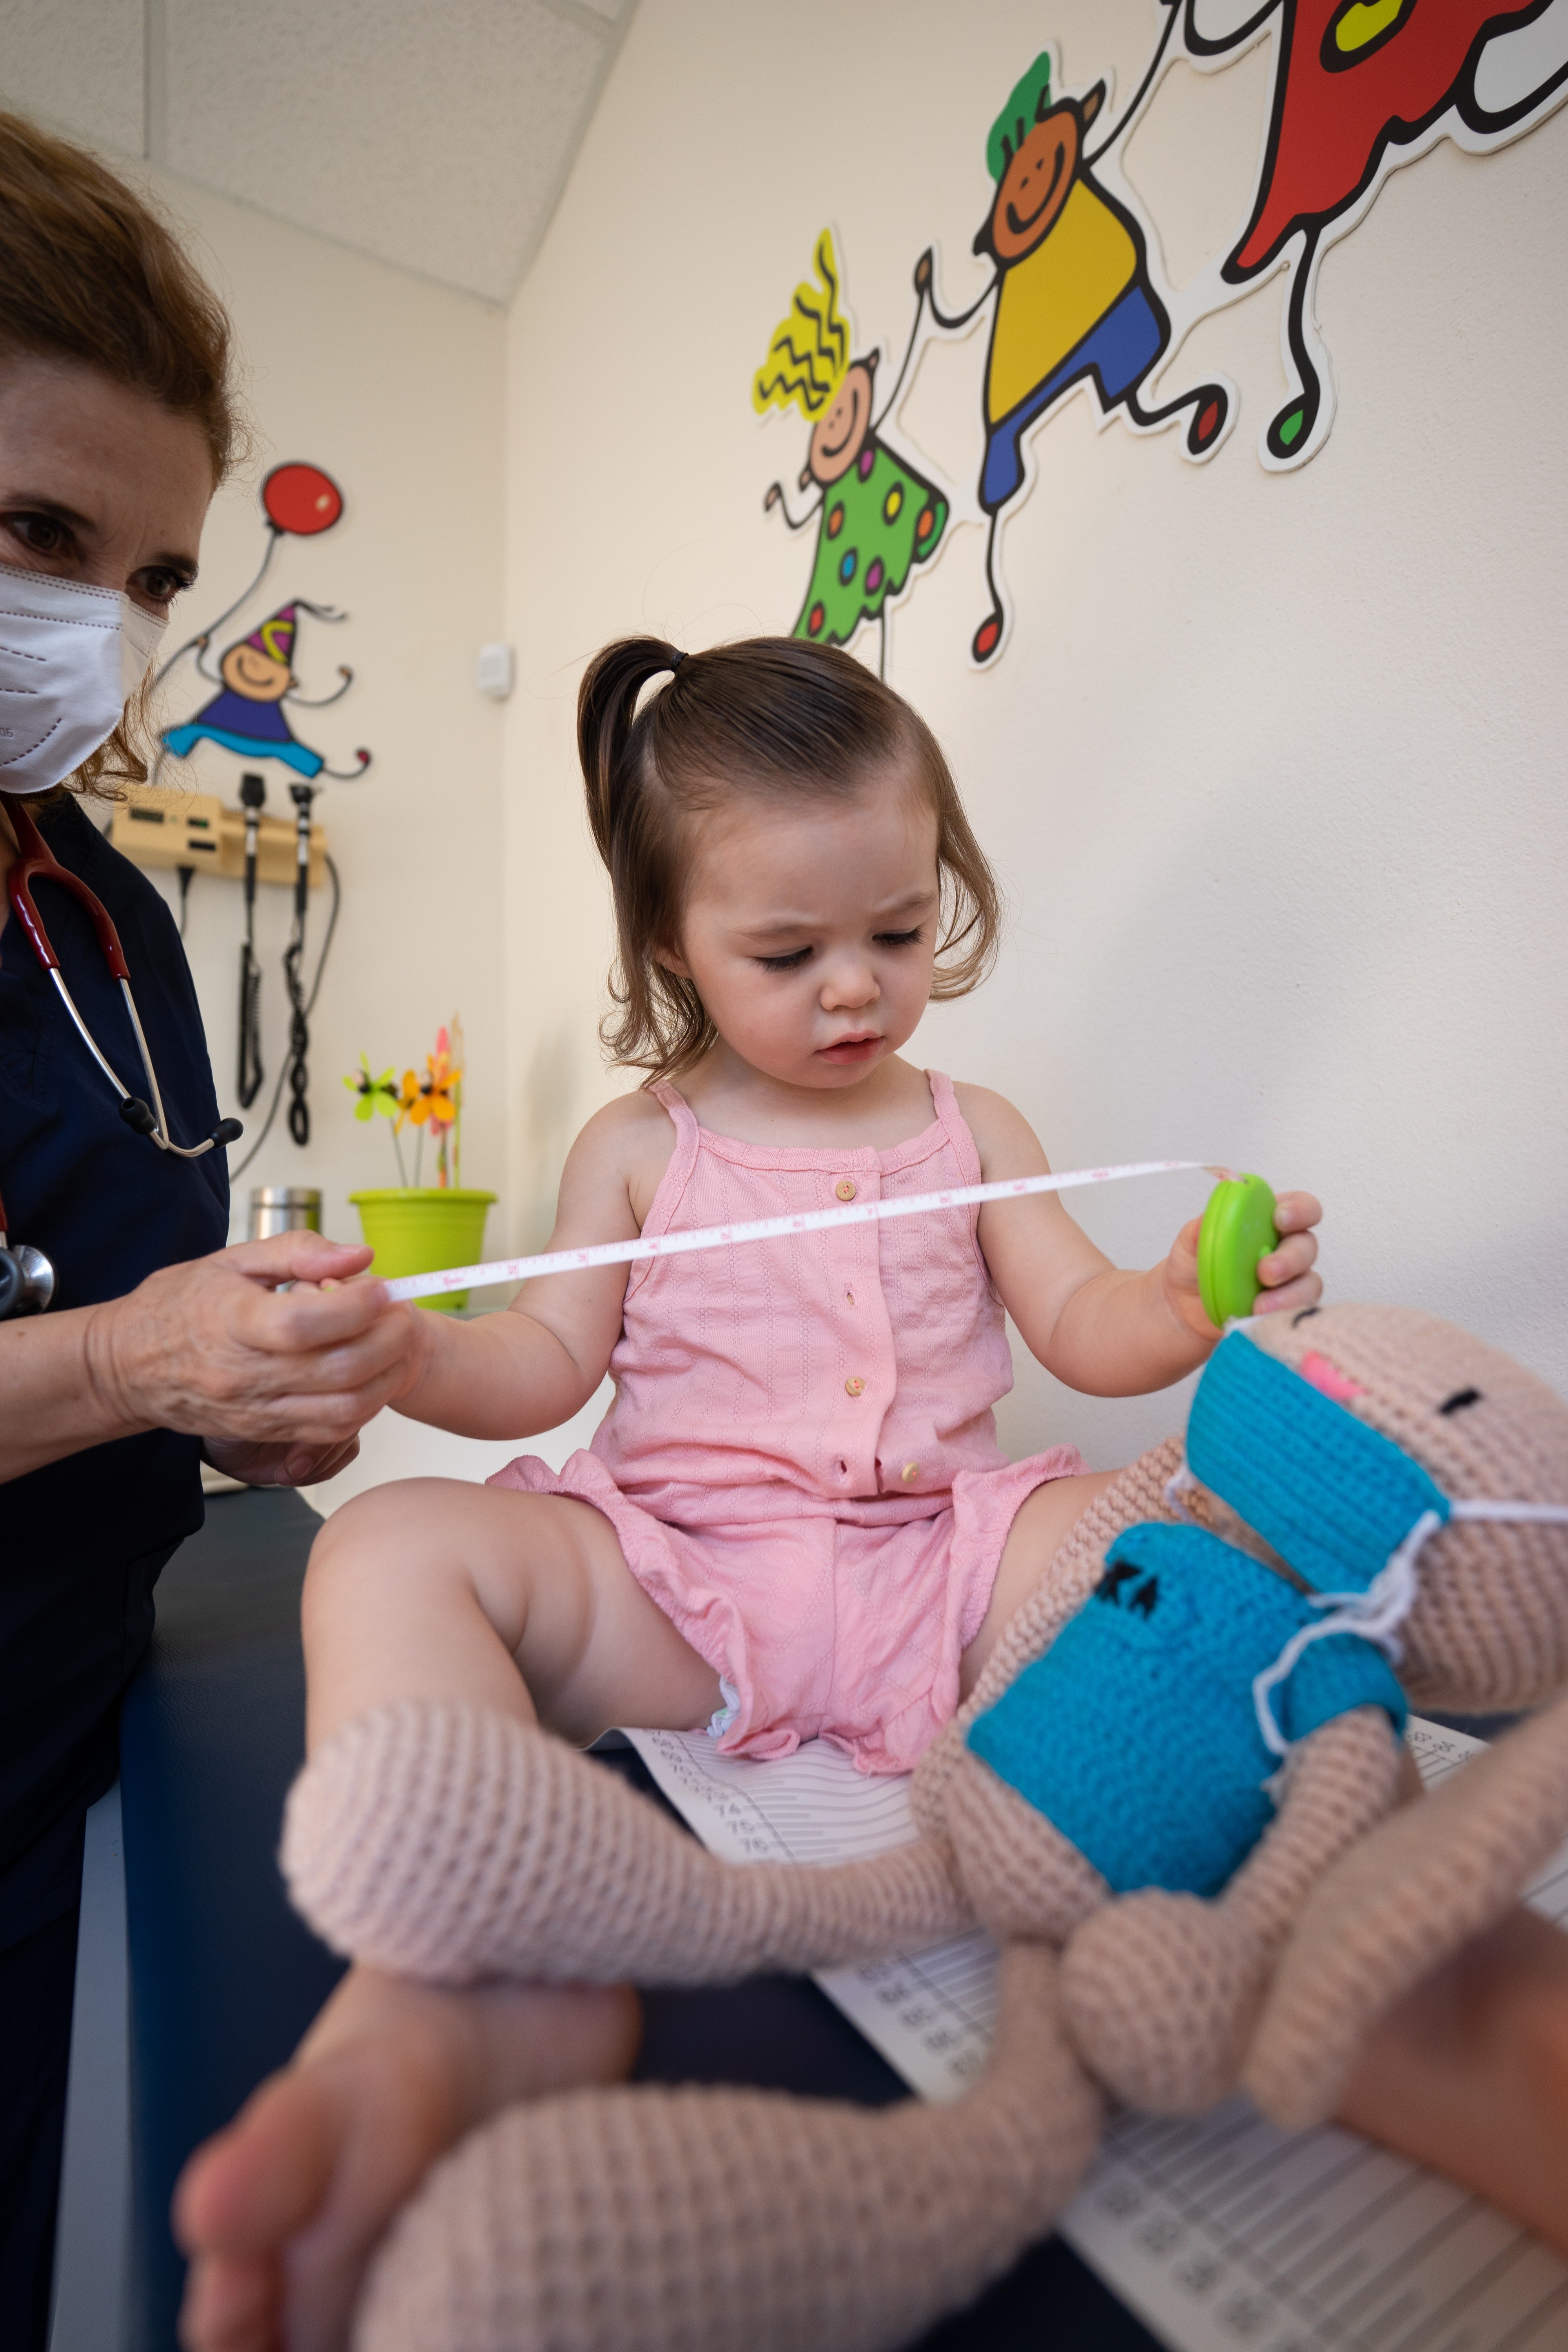 Enfermera cuidando a una niña. | Foto: Pexels